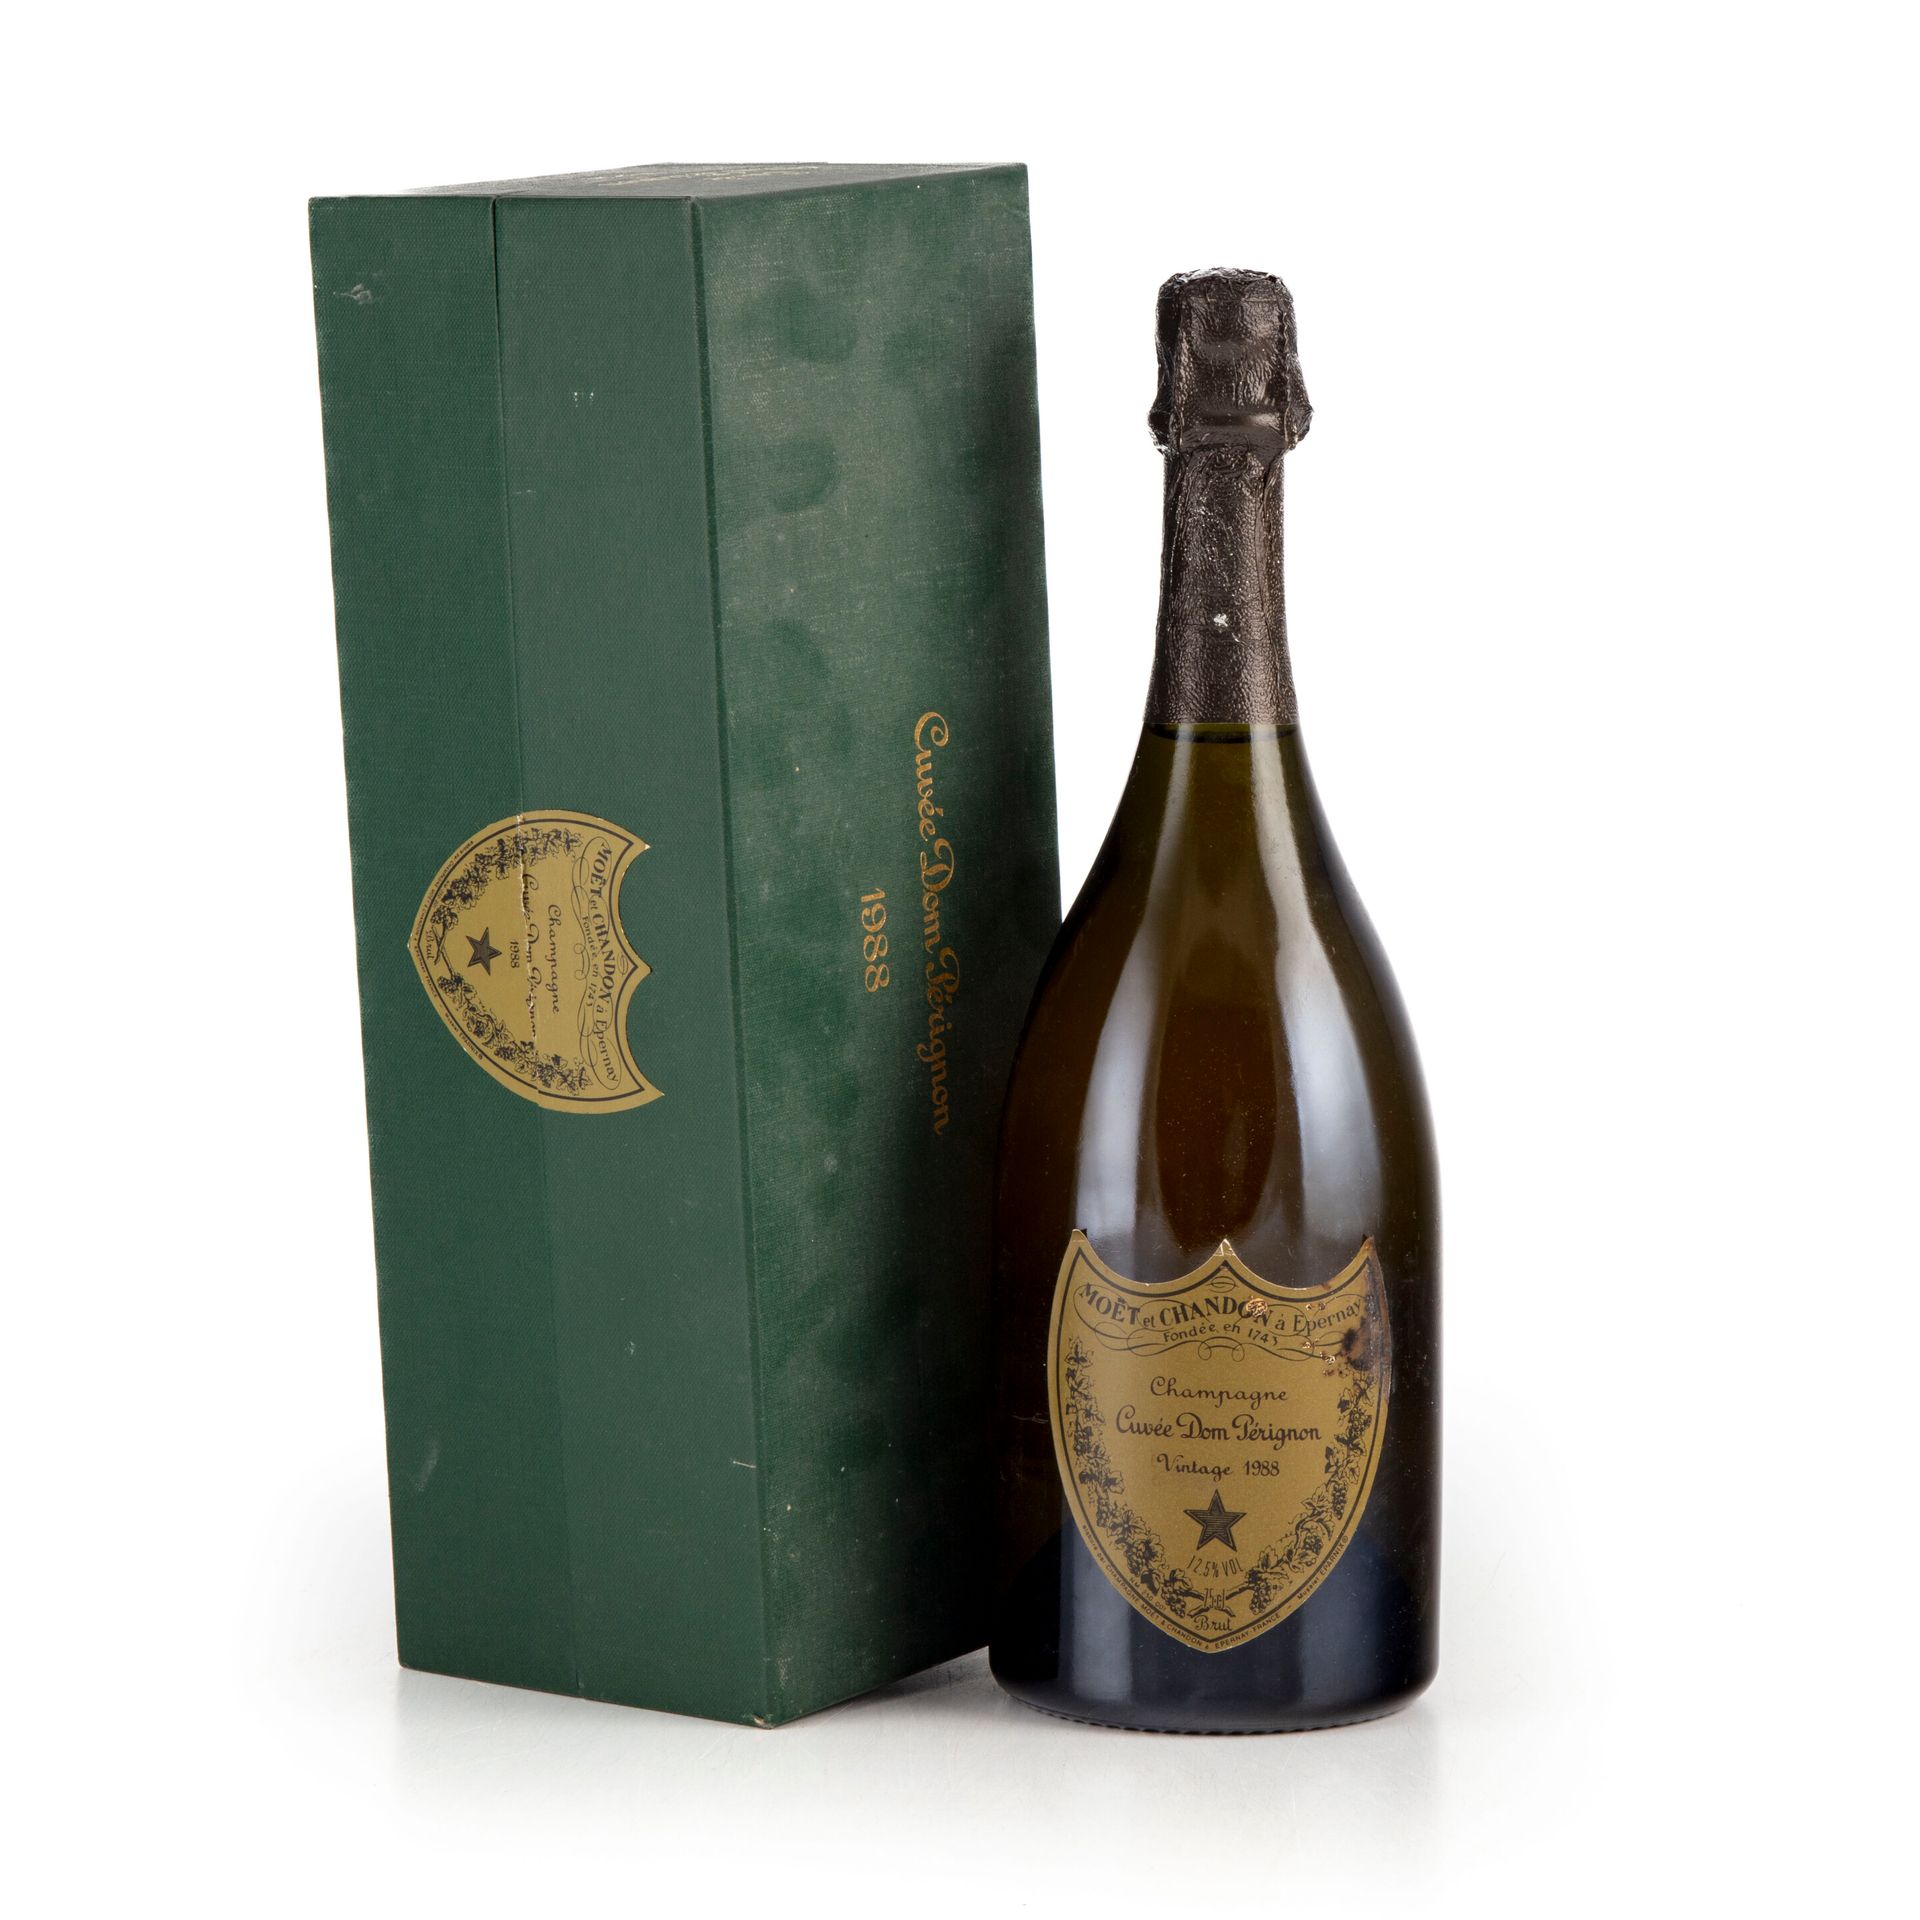 Null " 1 botella de Champagne Dom Perignon 1988 Vintage

(E. T, tlm, CIO tla)"